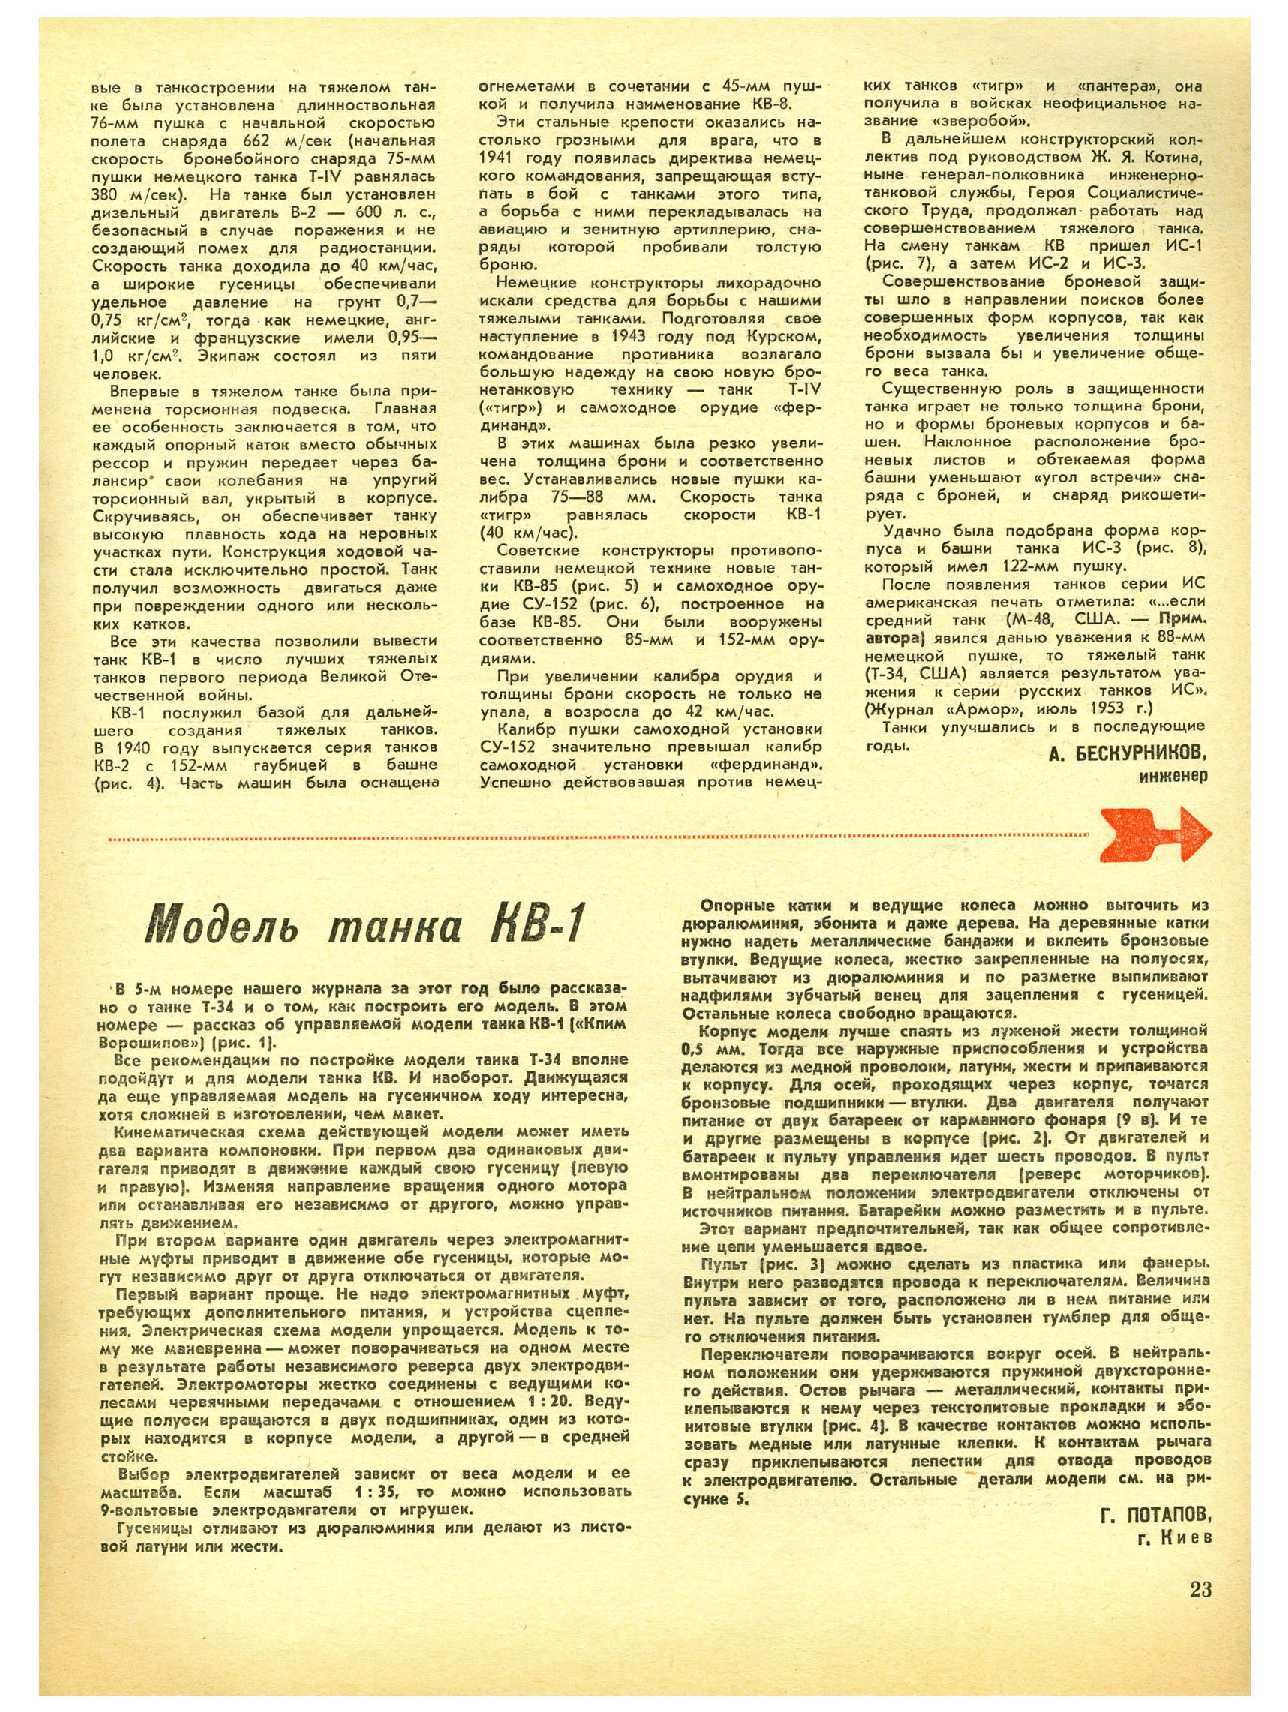 МК 9, 1970, 23 c.